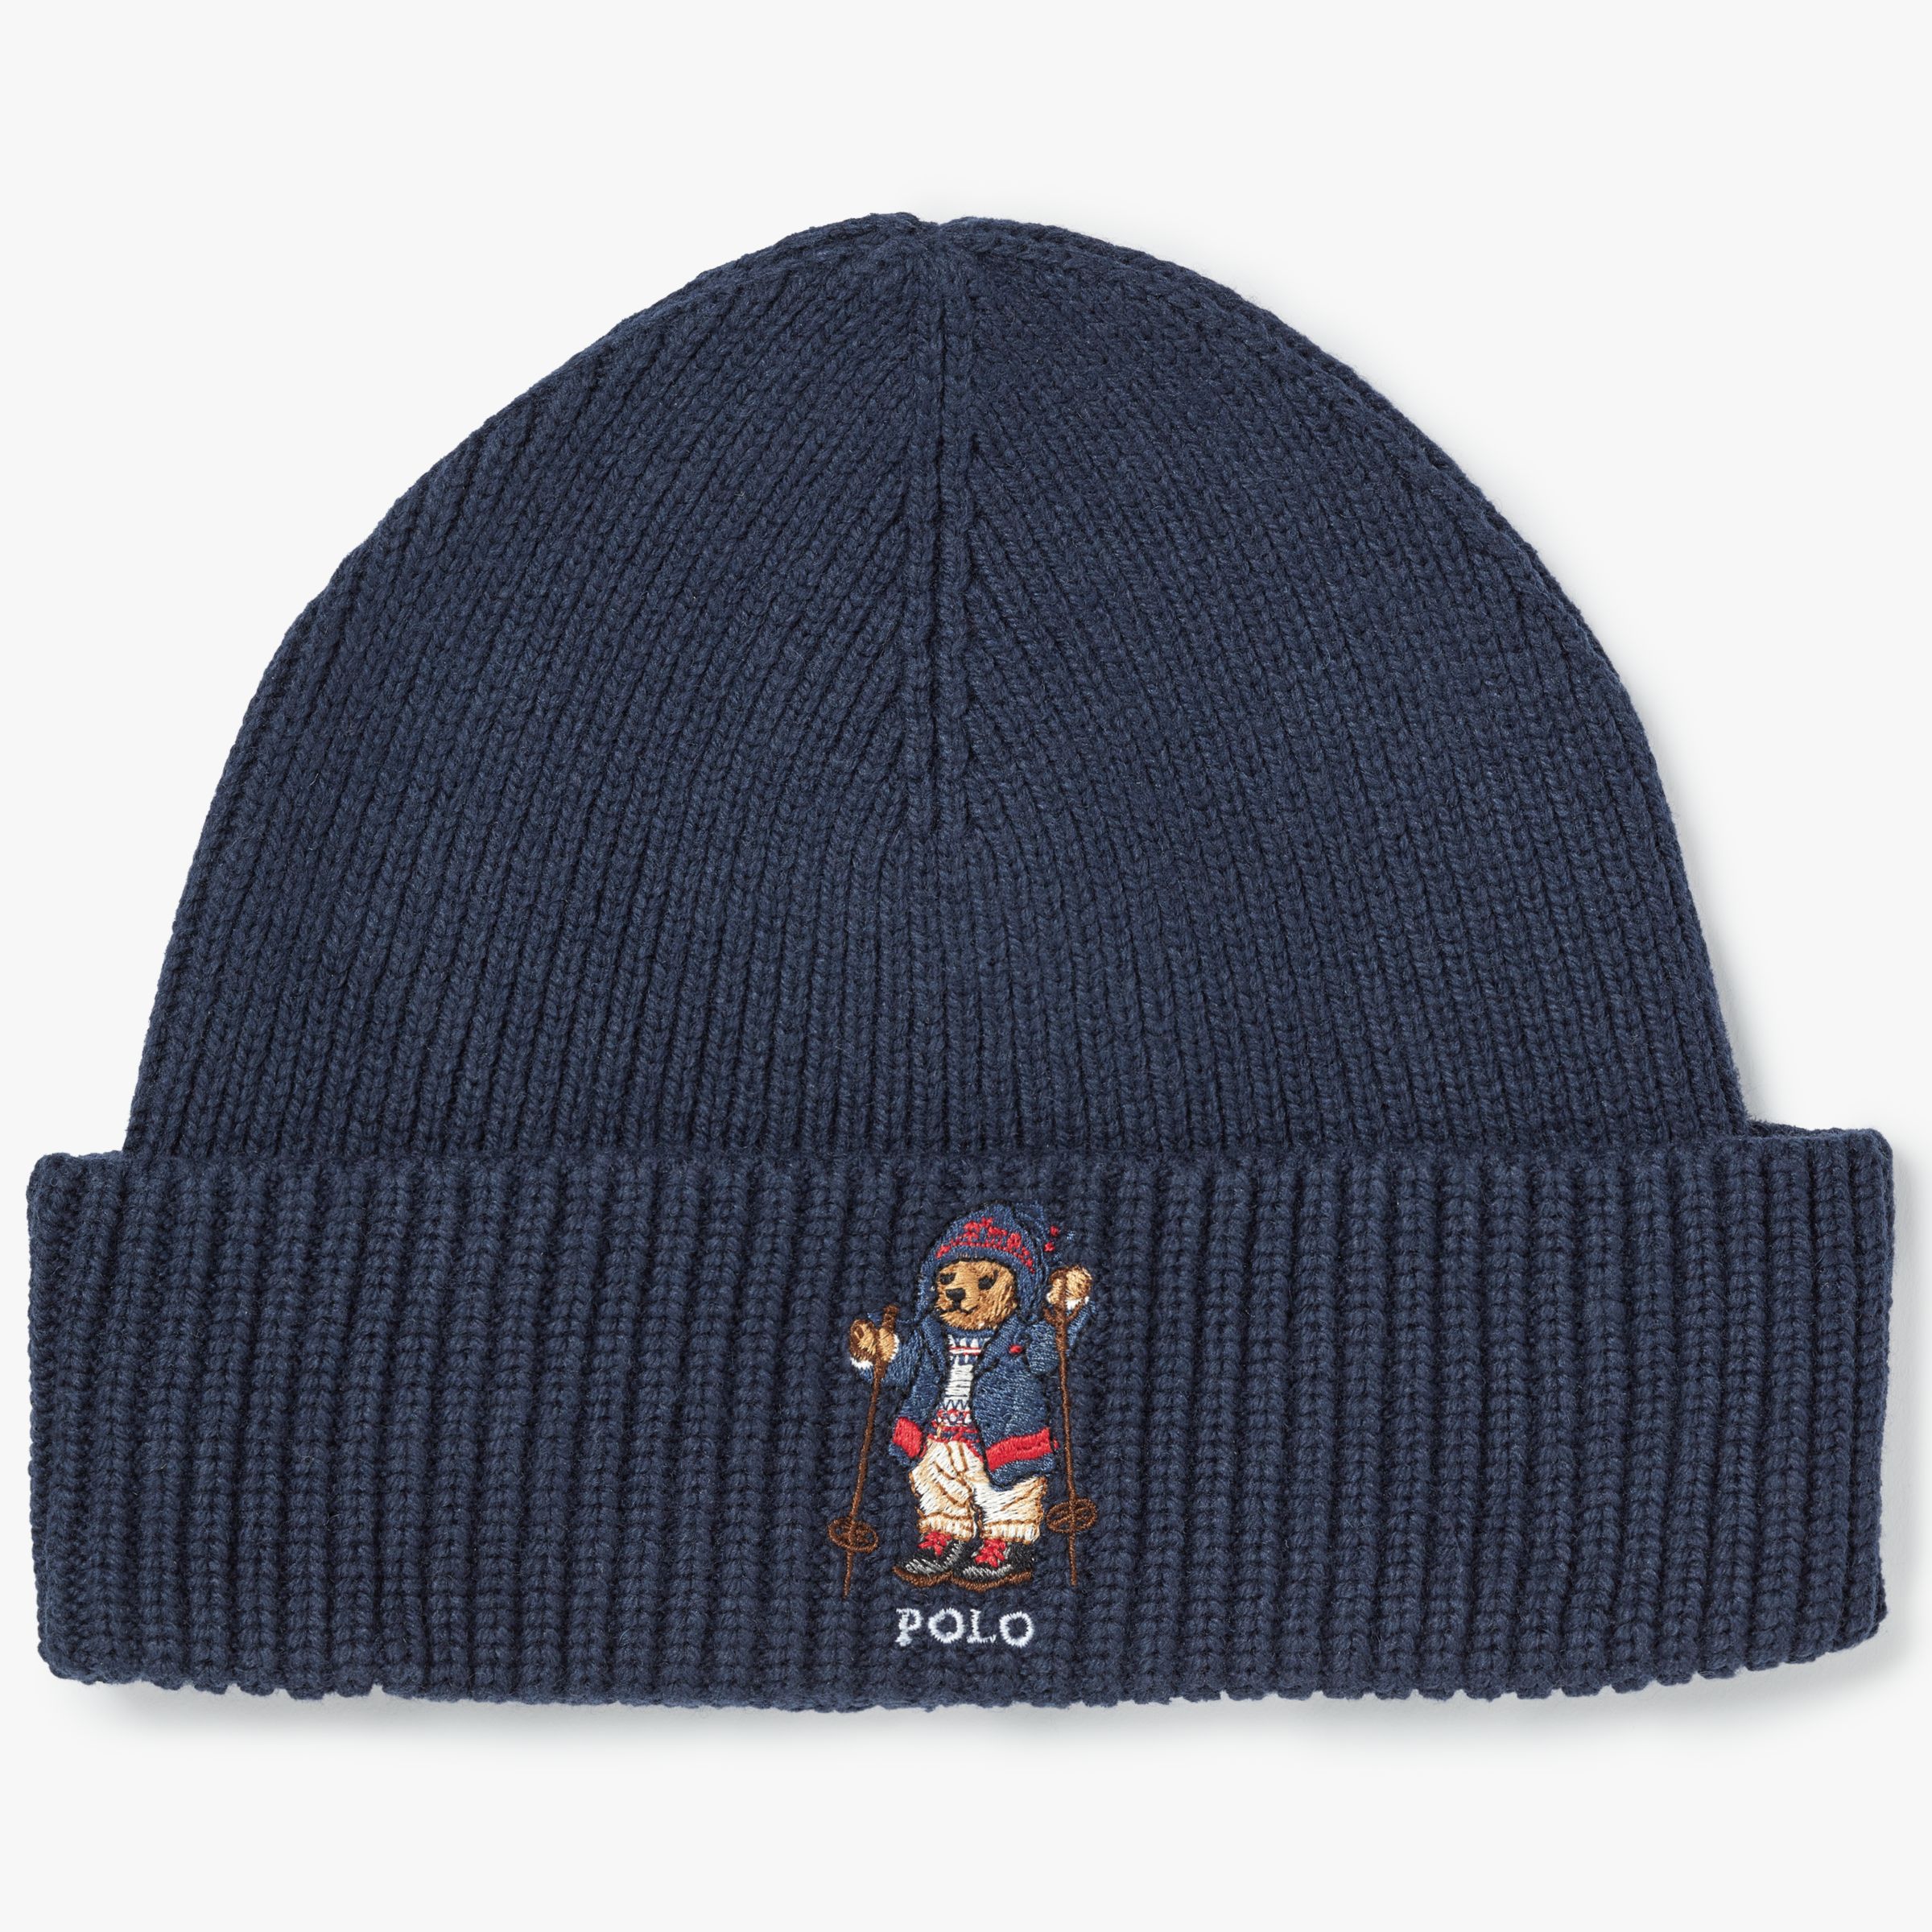 polo bear beanie hat